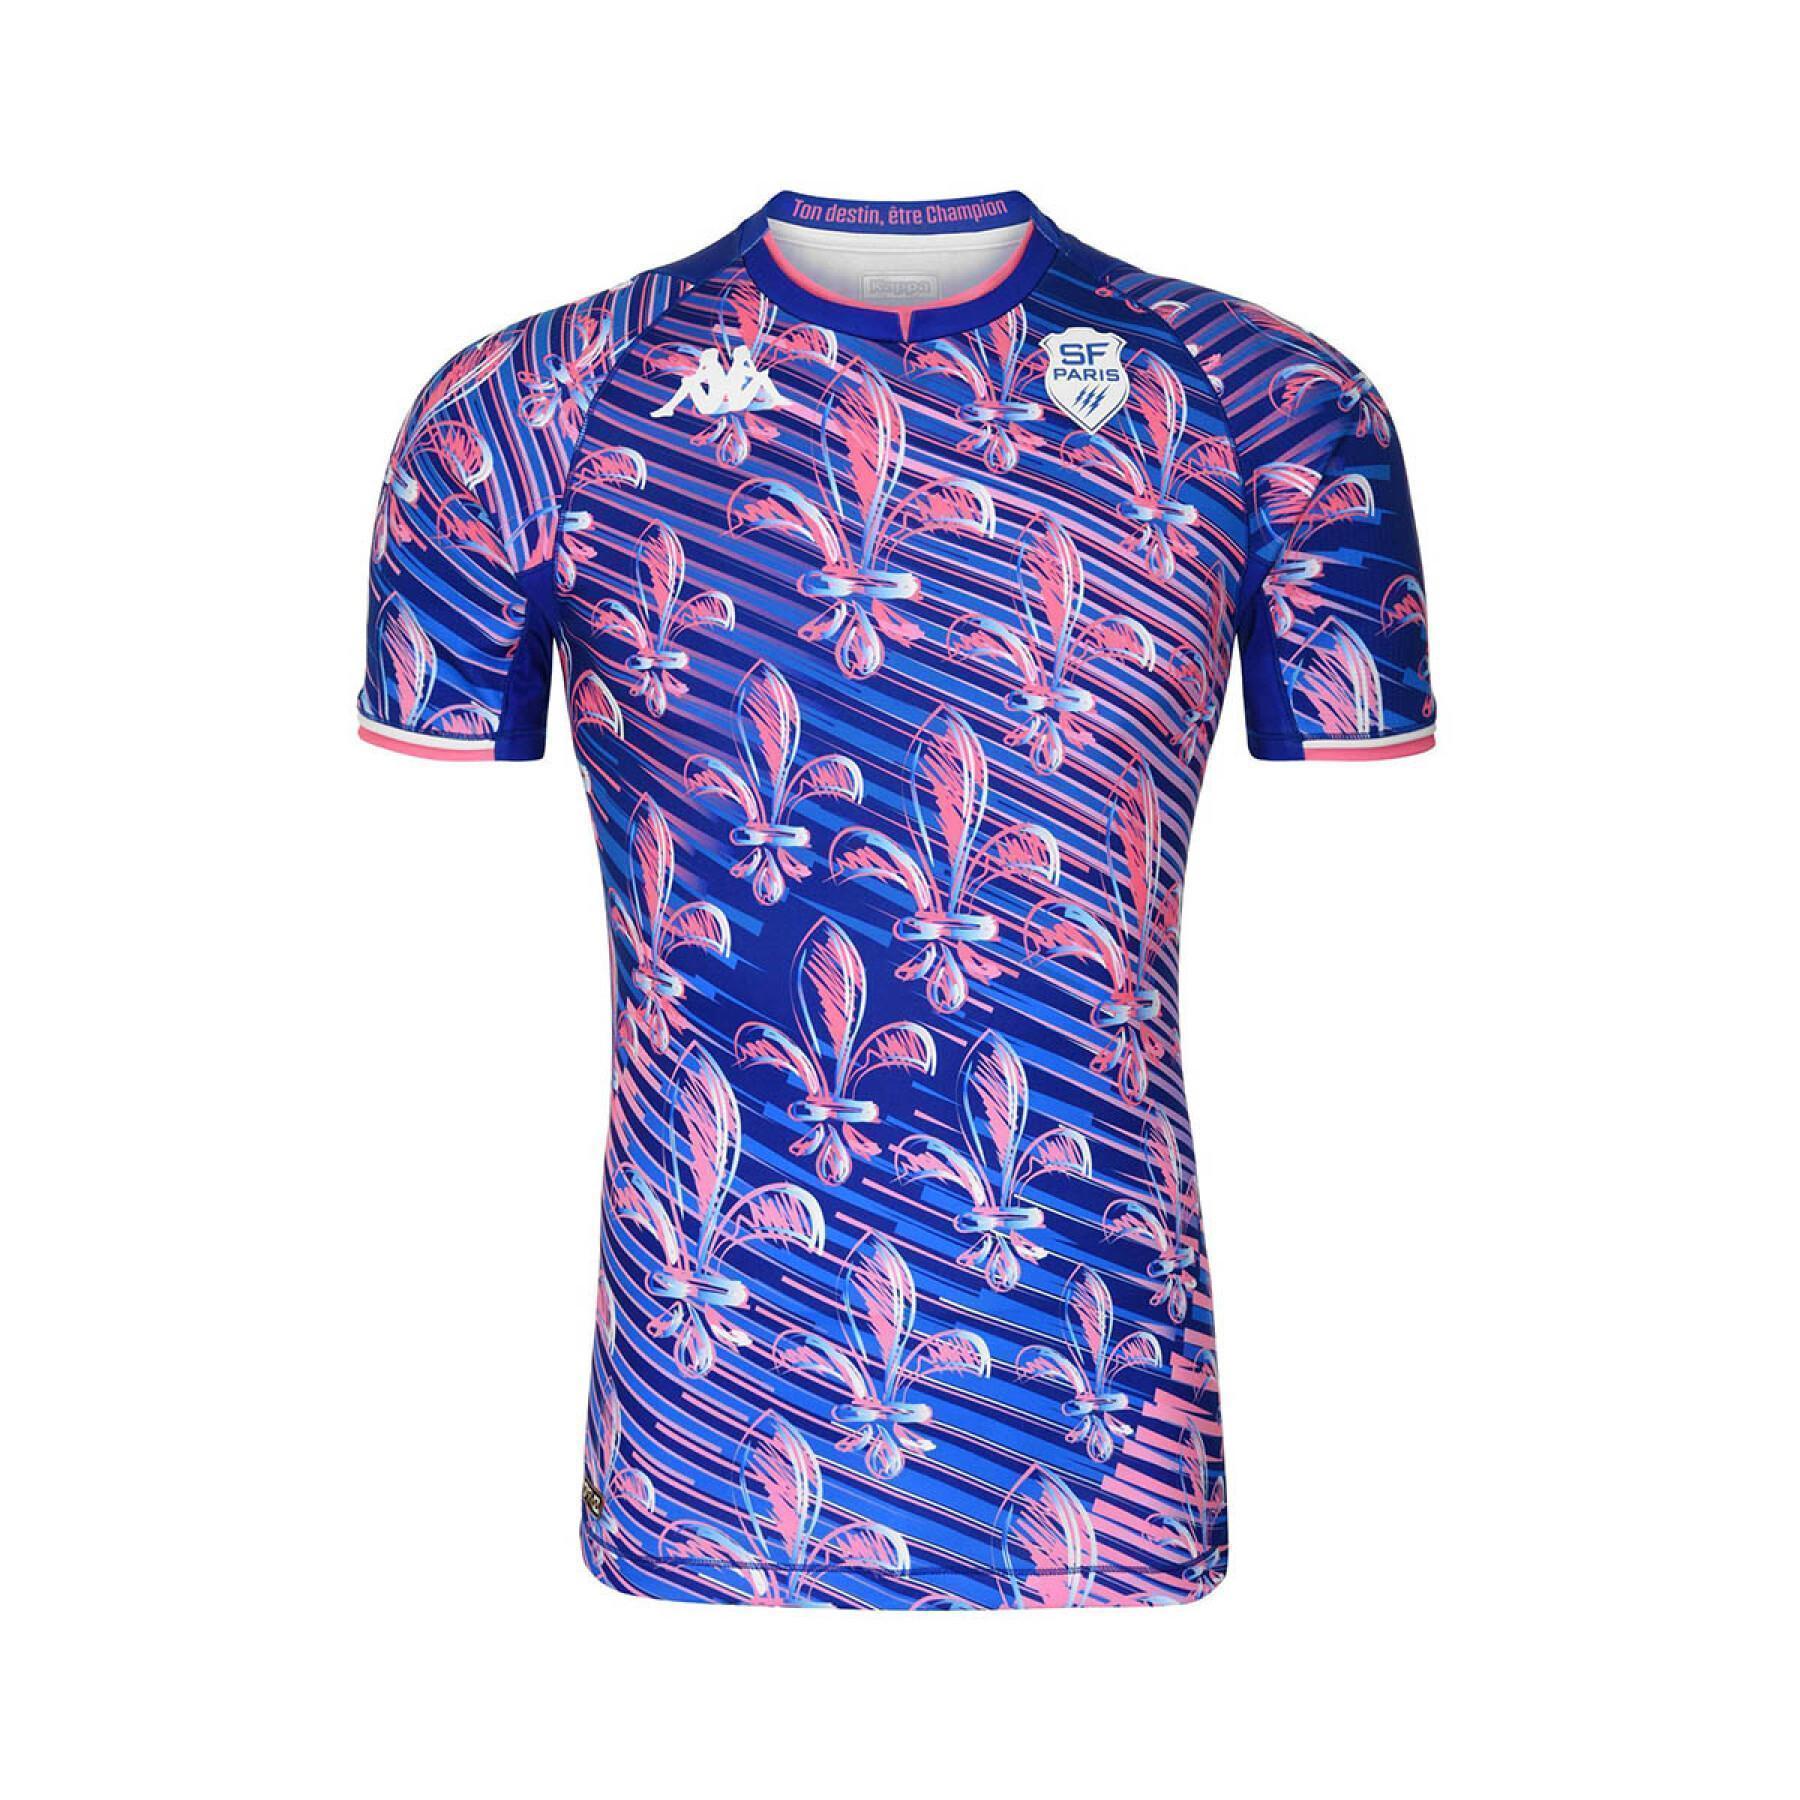 Camiseta away auténtico Stade Français 2021/22